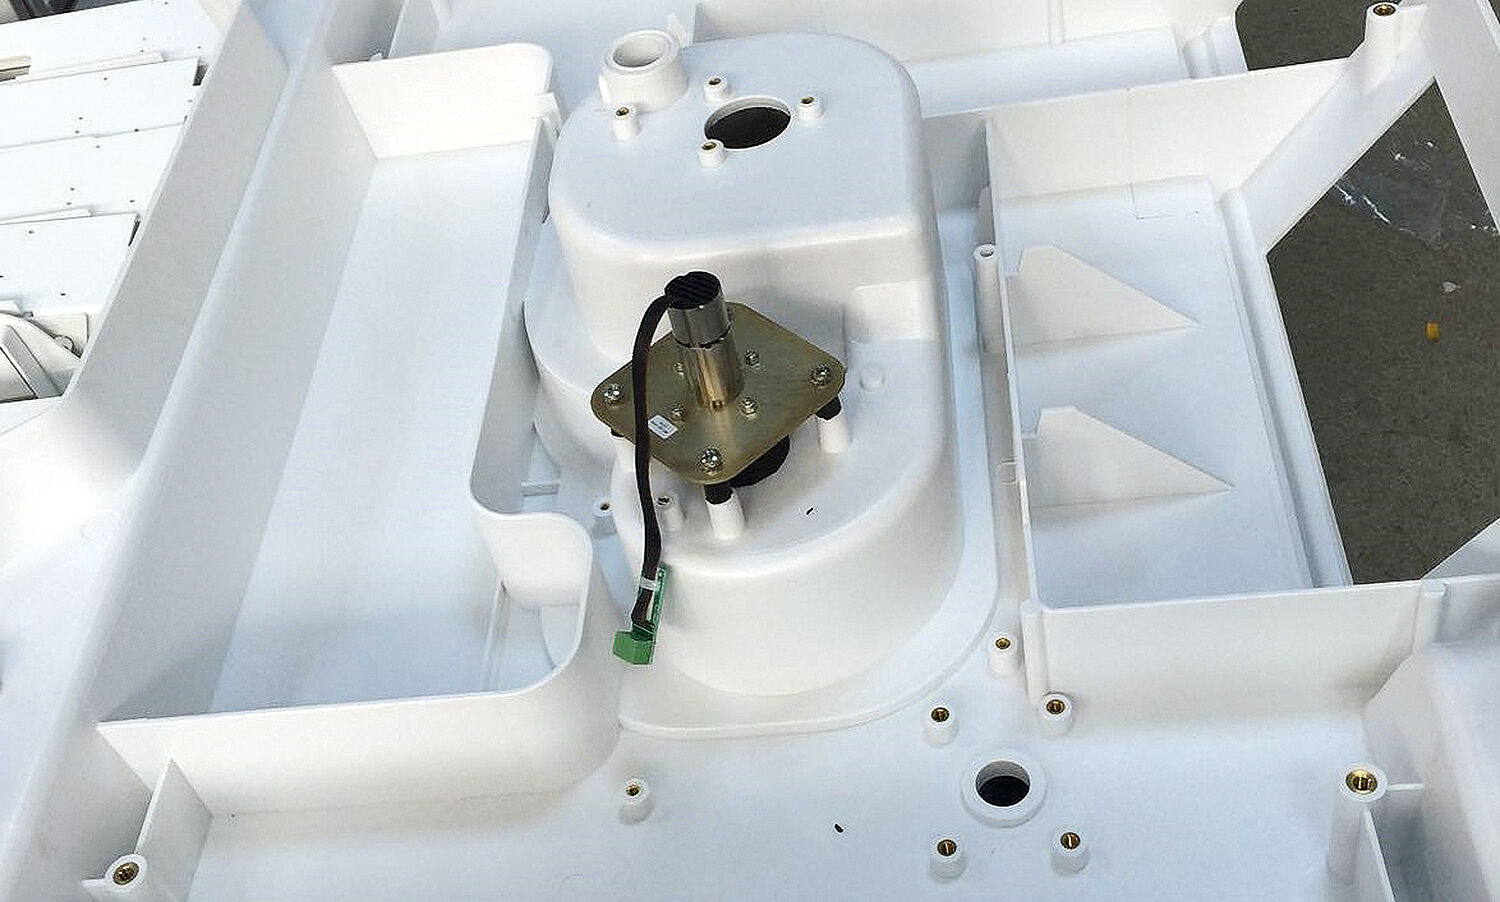 Motori brushless per il condizionamento dell'aria nelle incubatrici